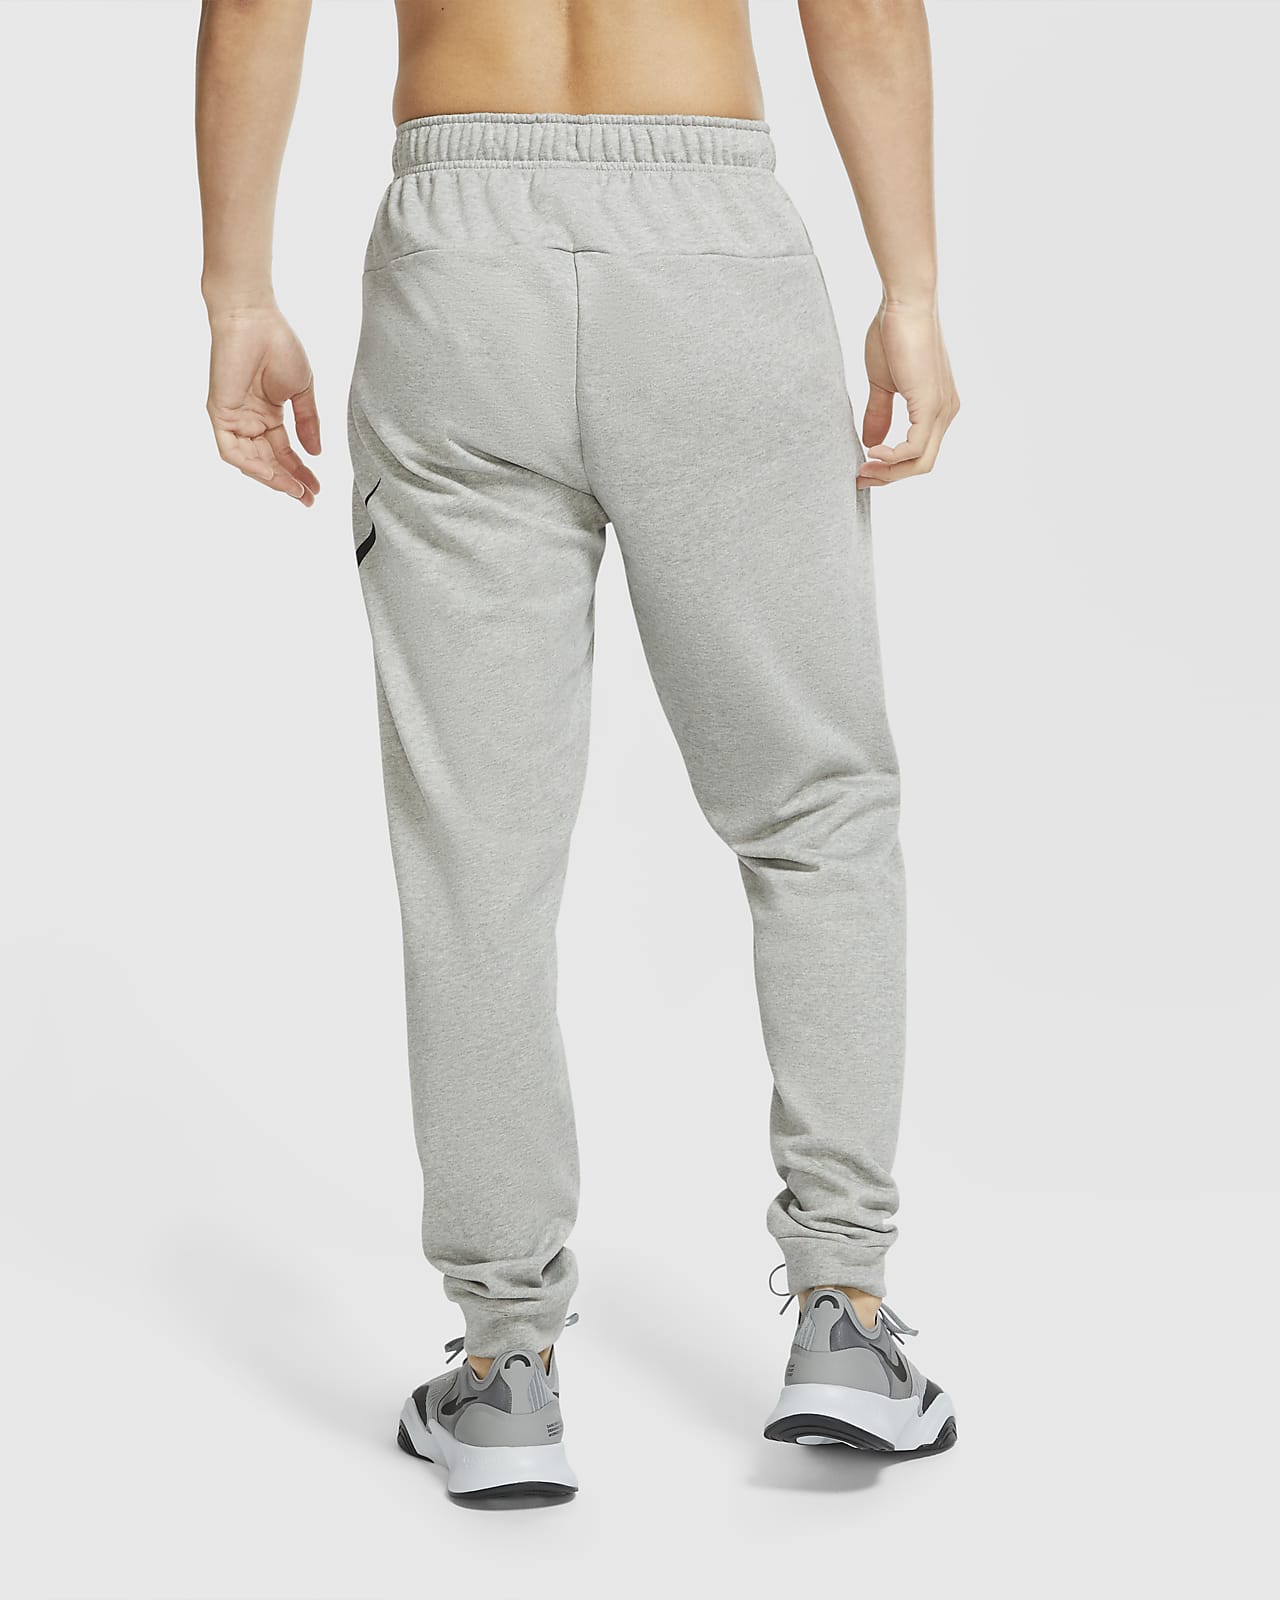 Nike Dri-FIT Flex Men's Yoga Pants Tapered Joggers Black Sz XL DD2120-010